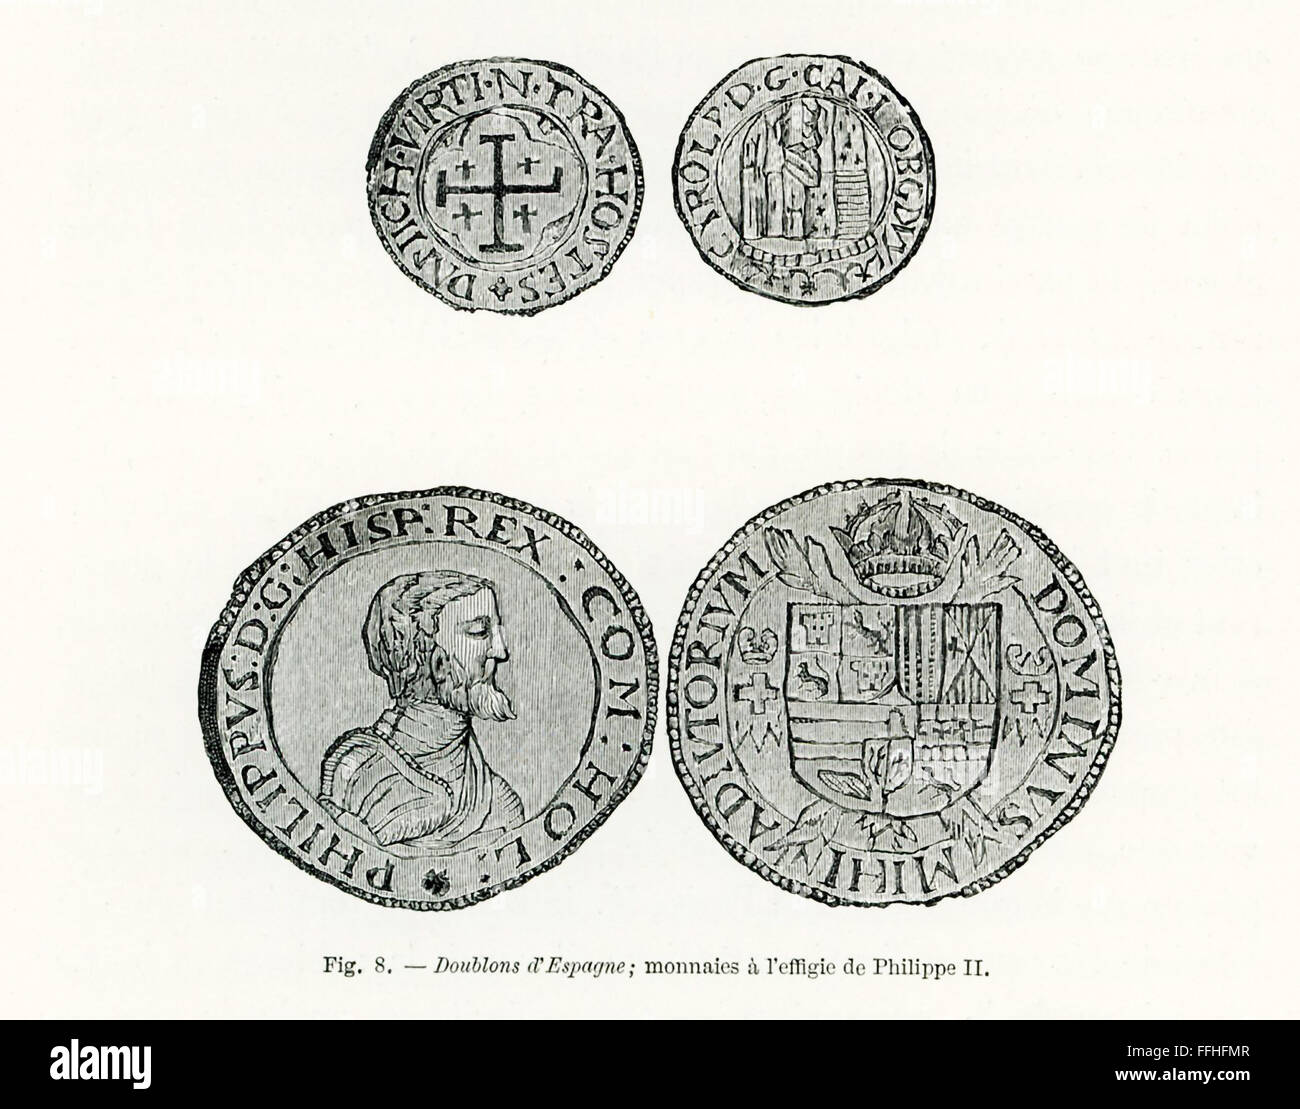 Montré ici sont fin des années 1800, des gravures d'doubloons espagnol. Le portrait ici, c'est Philippe II d'Espagne. Il a régné sur l'Espagne de 1556 à 1598 et au Portugal de 1581 à 1598. Comme l'époux de la Reine Marie d'Angleterre, il était roi d'Angleterre et d'Irlande 1544-1588. Philippe a été le dirigeant responsable de l'Armada espagnole. Or monétaire ont été Doubloons pièces frappées en Espagne, Mexique, Pérou, et Nueva Grande. Banque D'Images